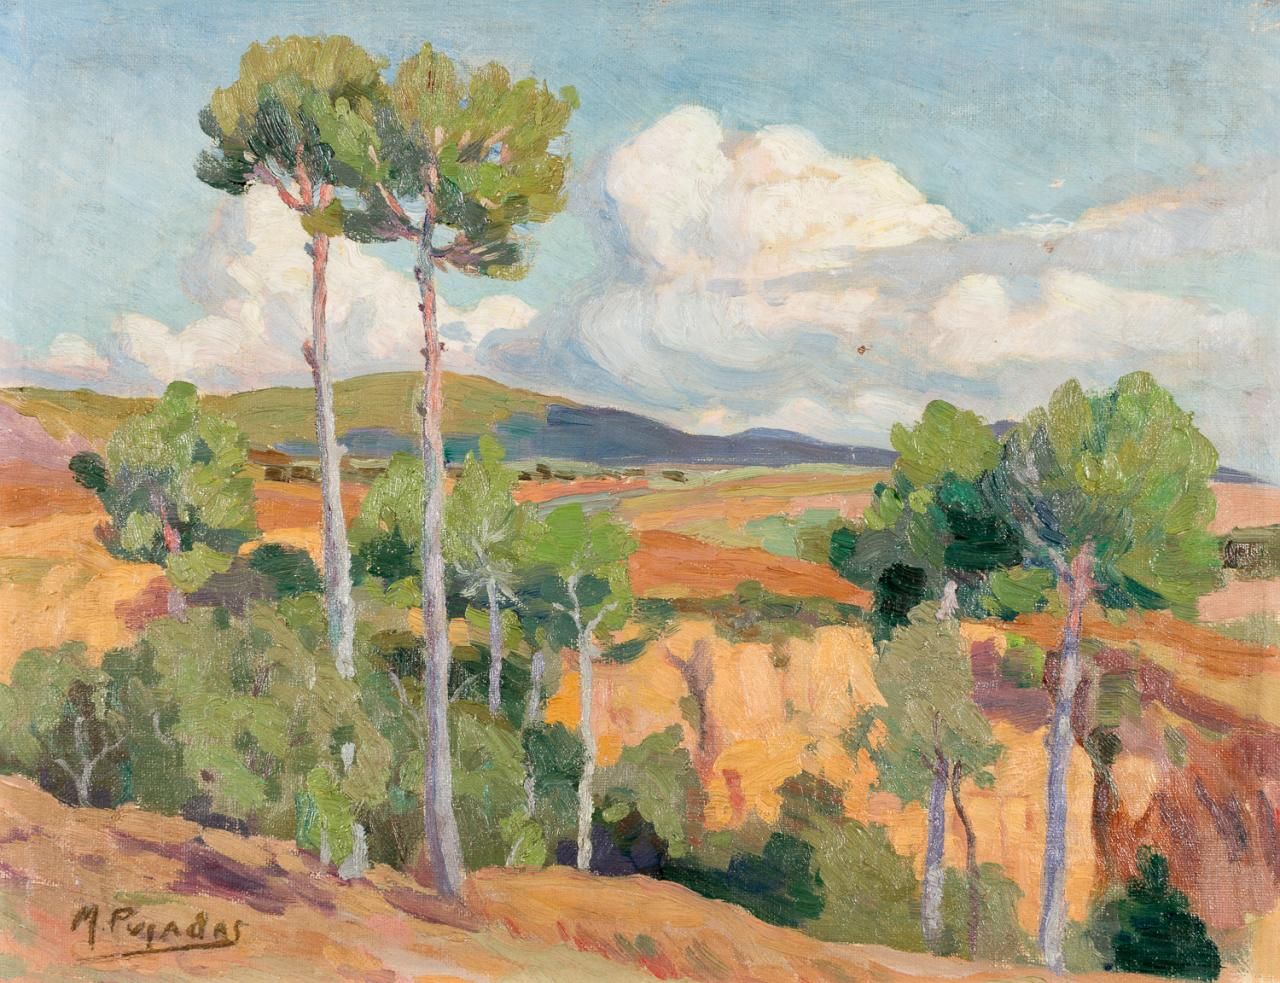 MIQUEL PUJADAS i BADIA (Terrassa, 1892-1974) Landschaft
Öl auf Leinwand auf Tábl&hellip;